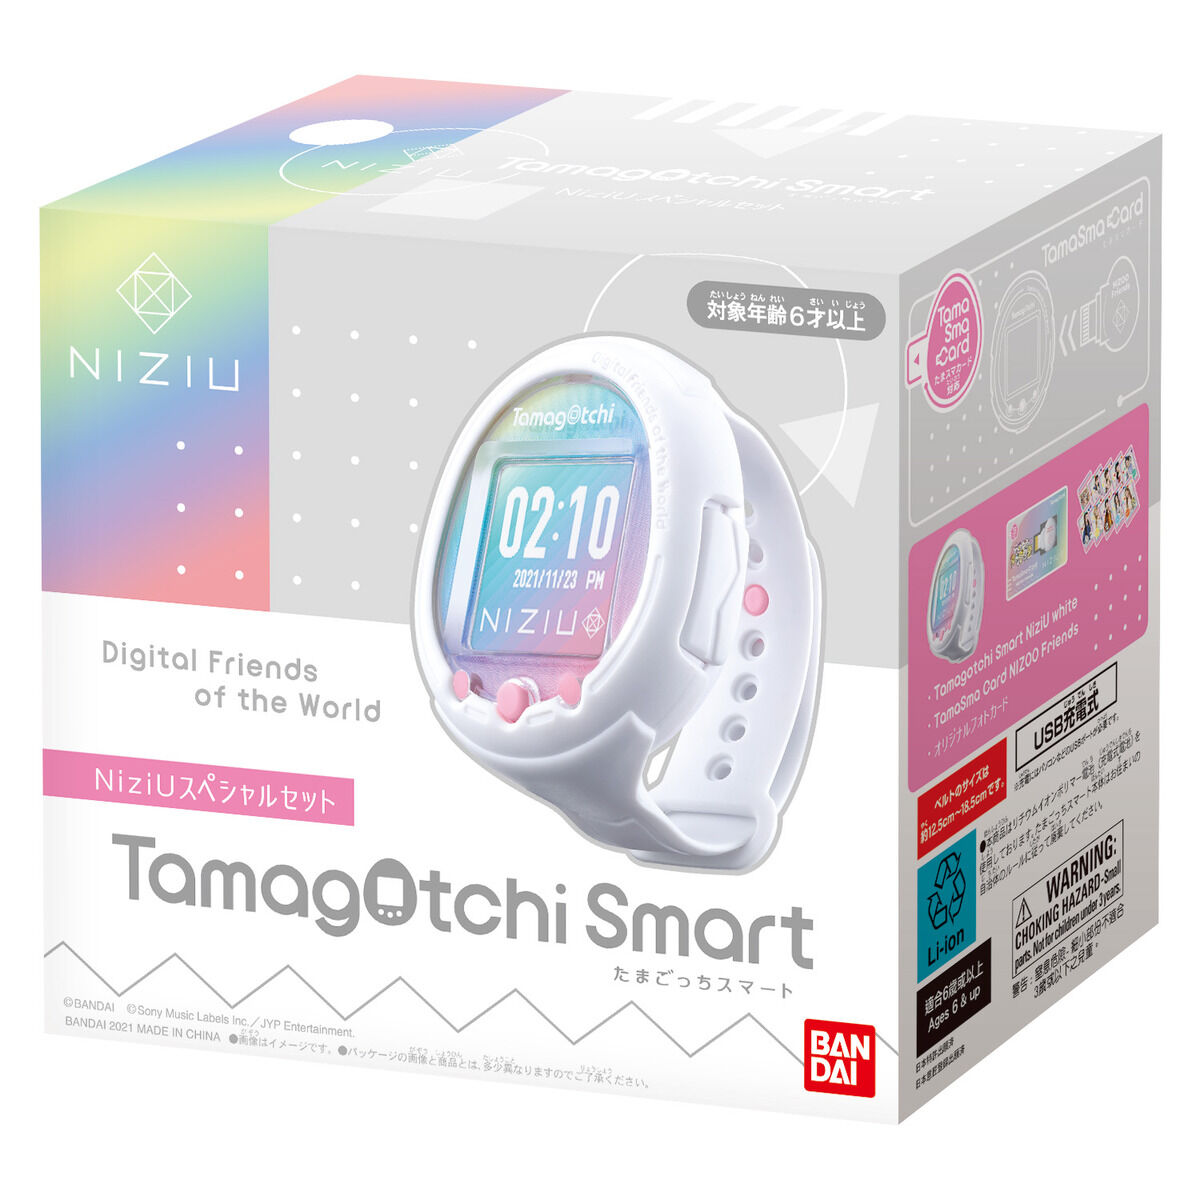 Tamagotchi Smart NiziUスペシャルセット| プレミアムバンダイ